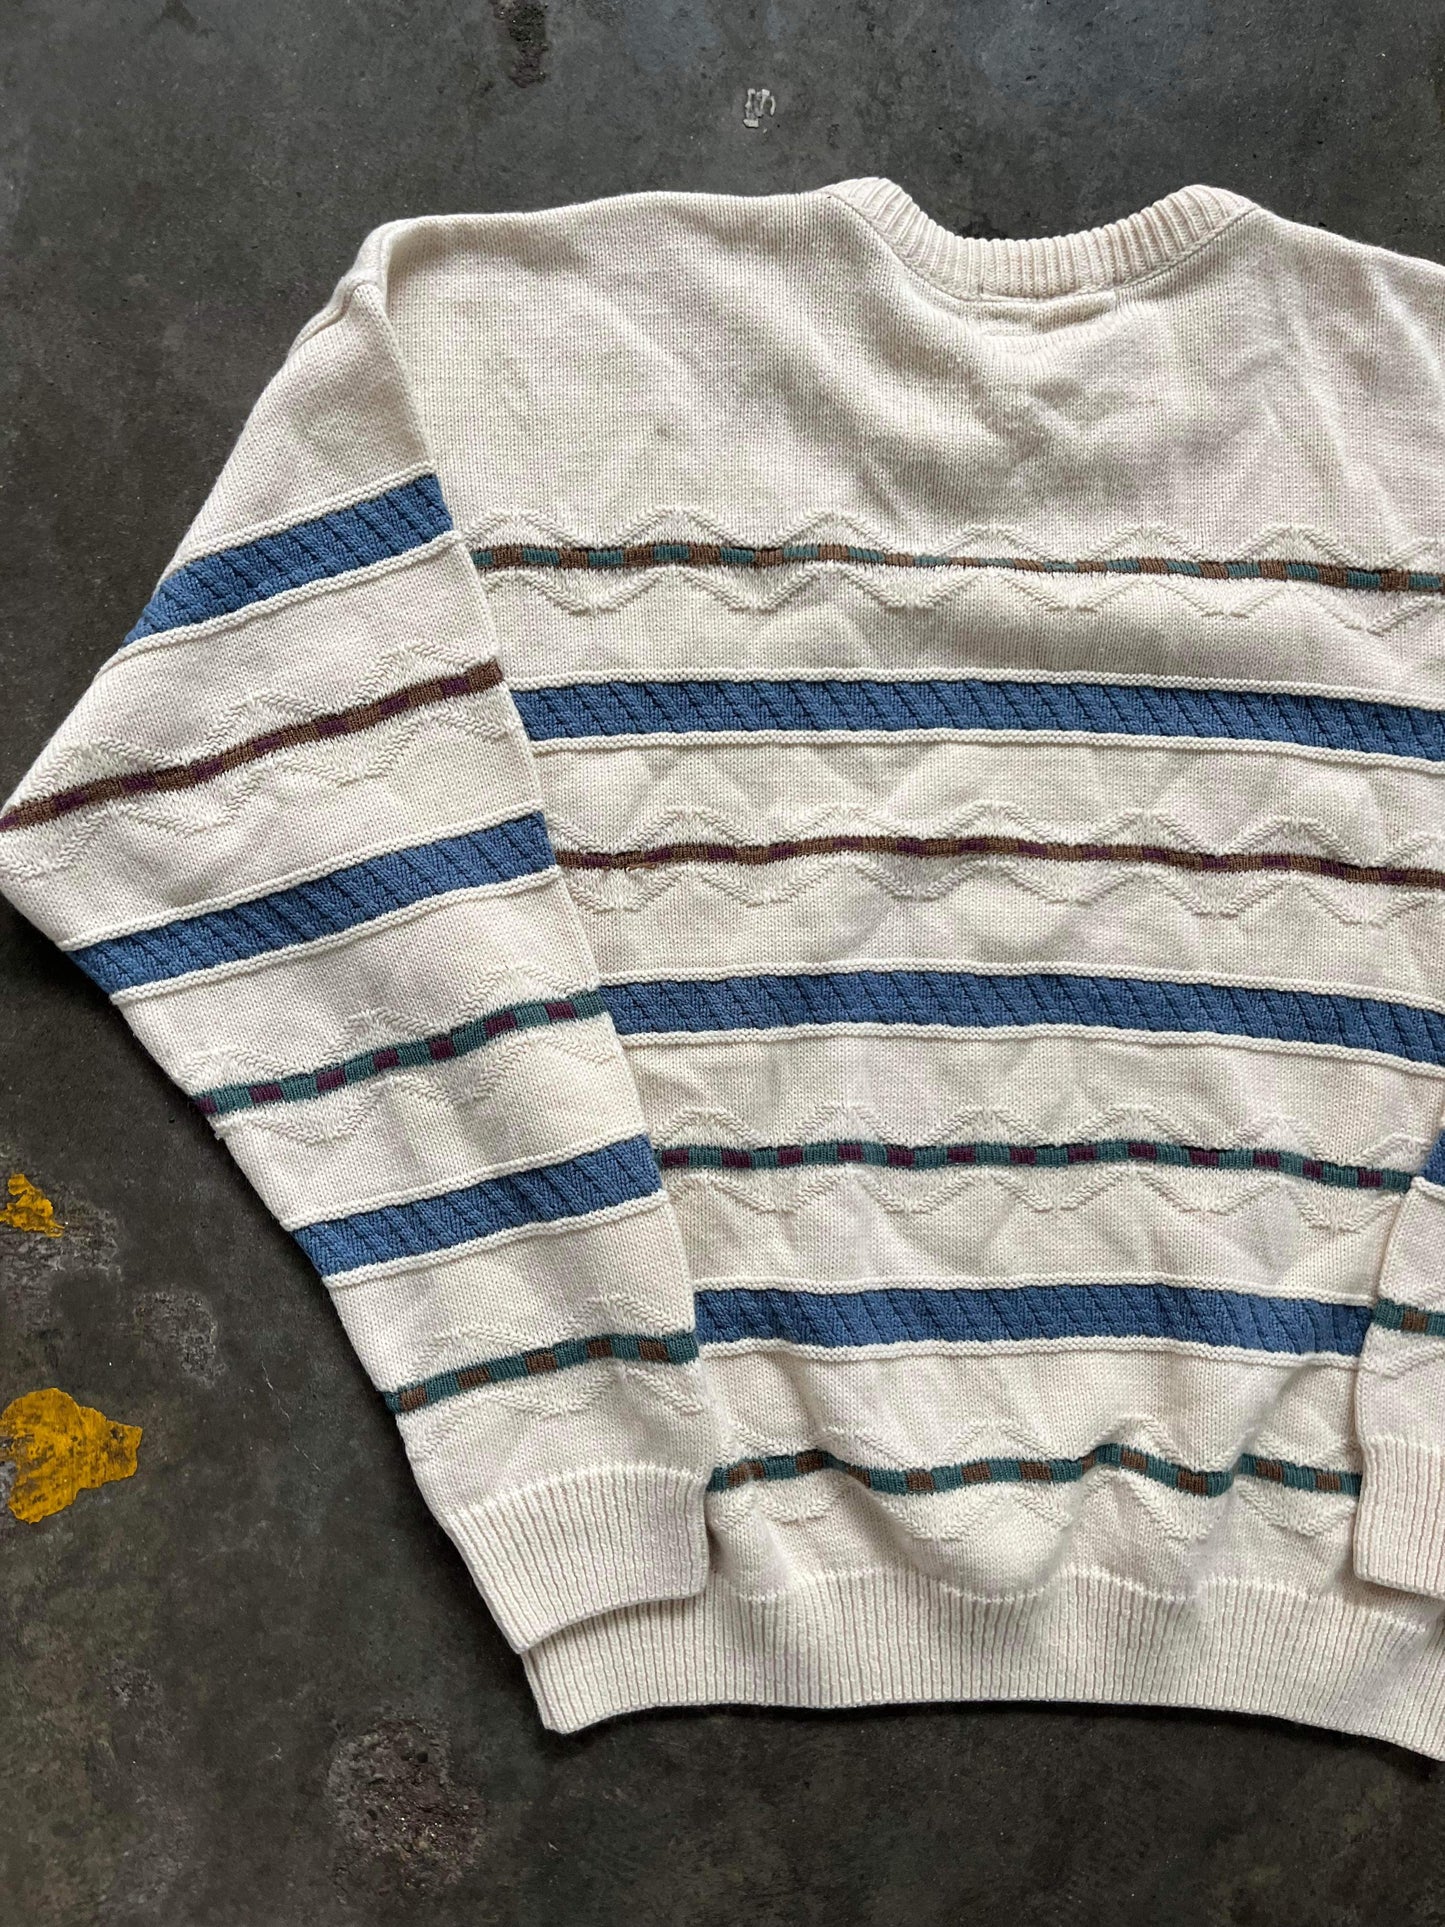 (L) Vintage Texture Knit